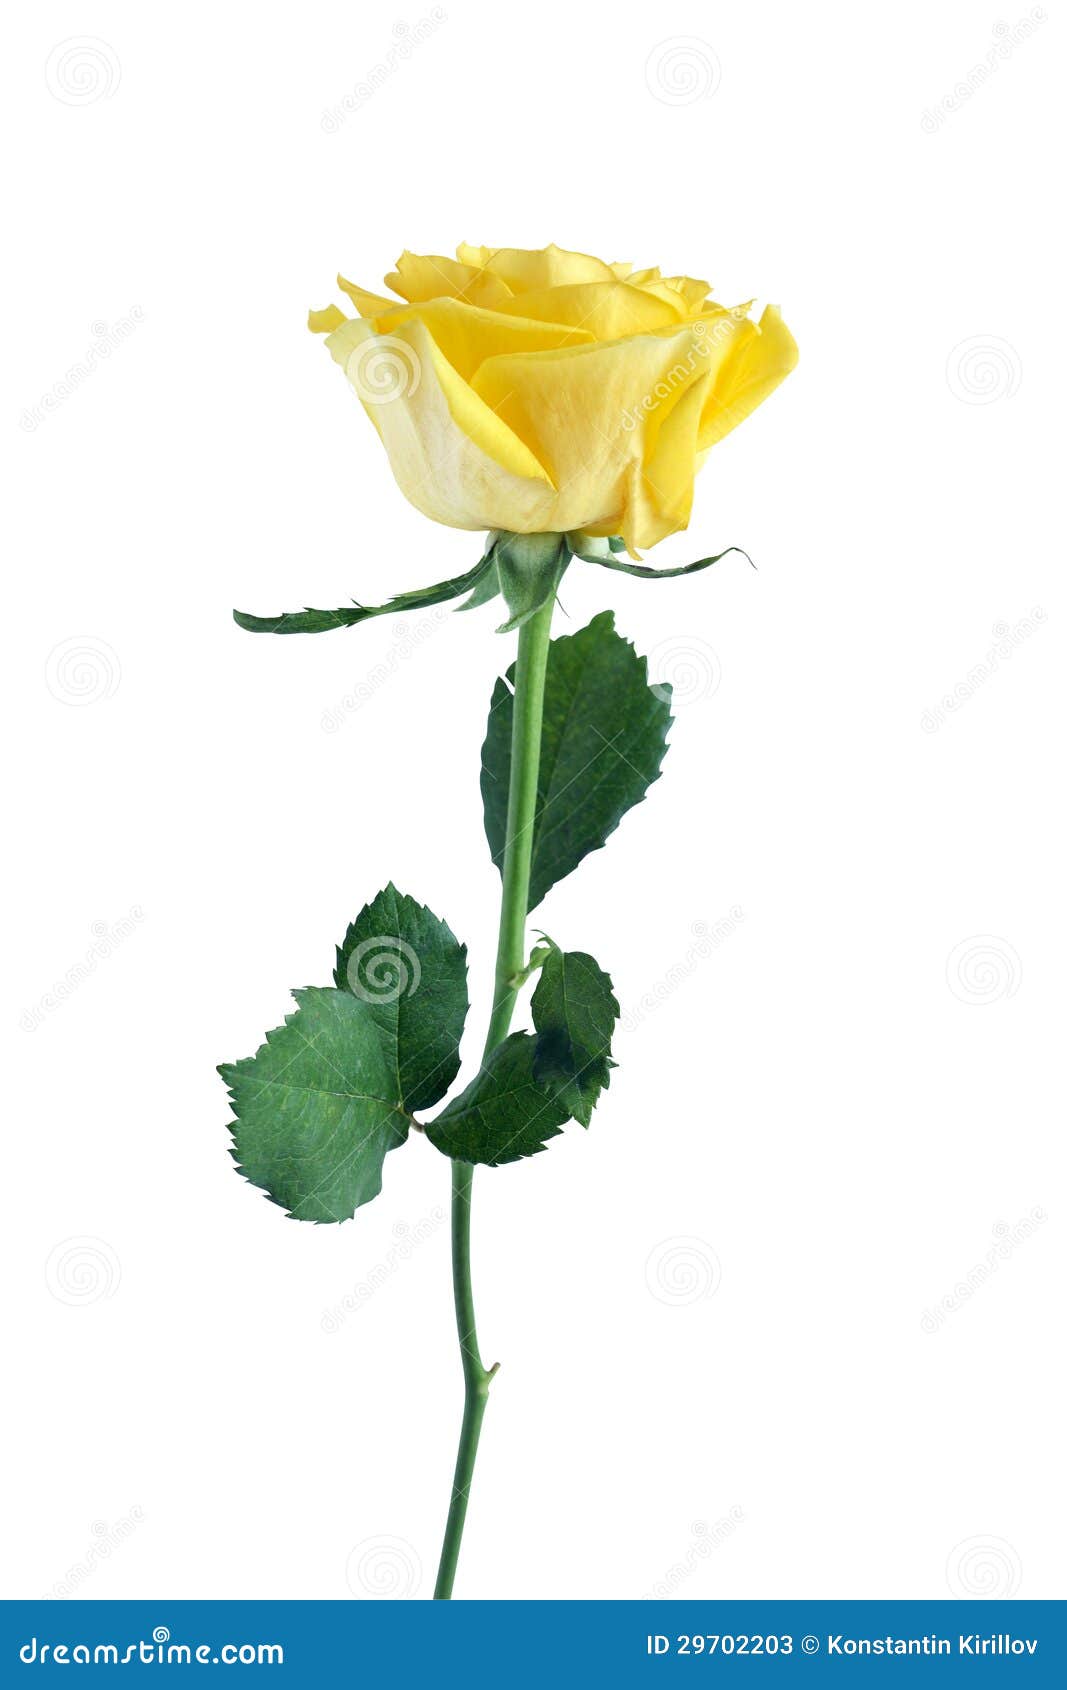 clipart rose jaune - photo #36